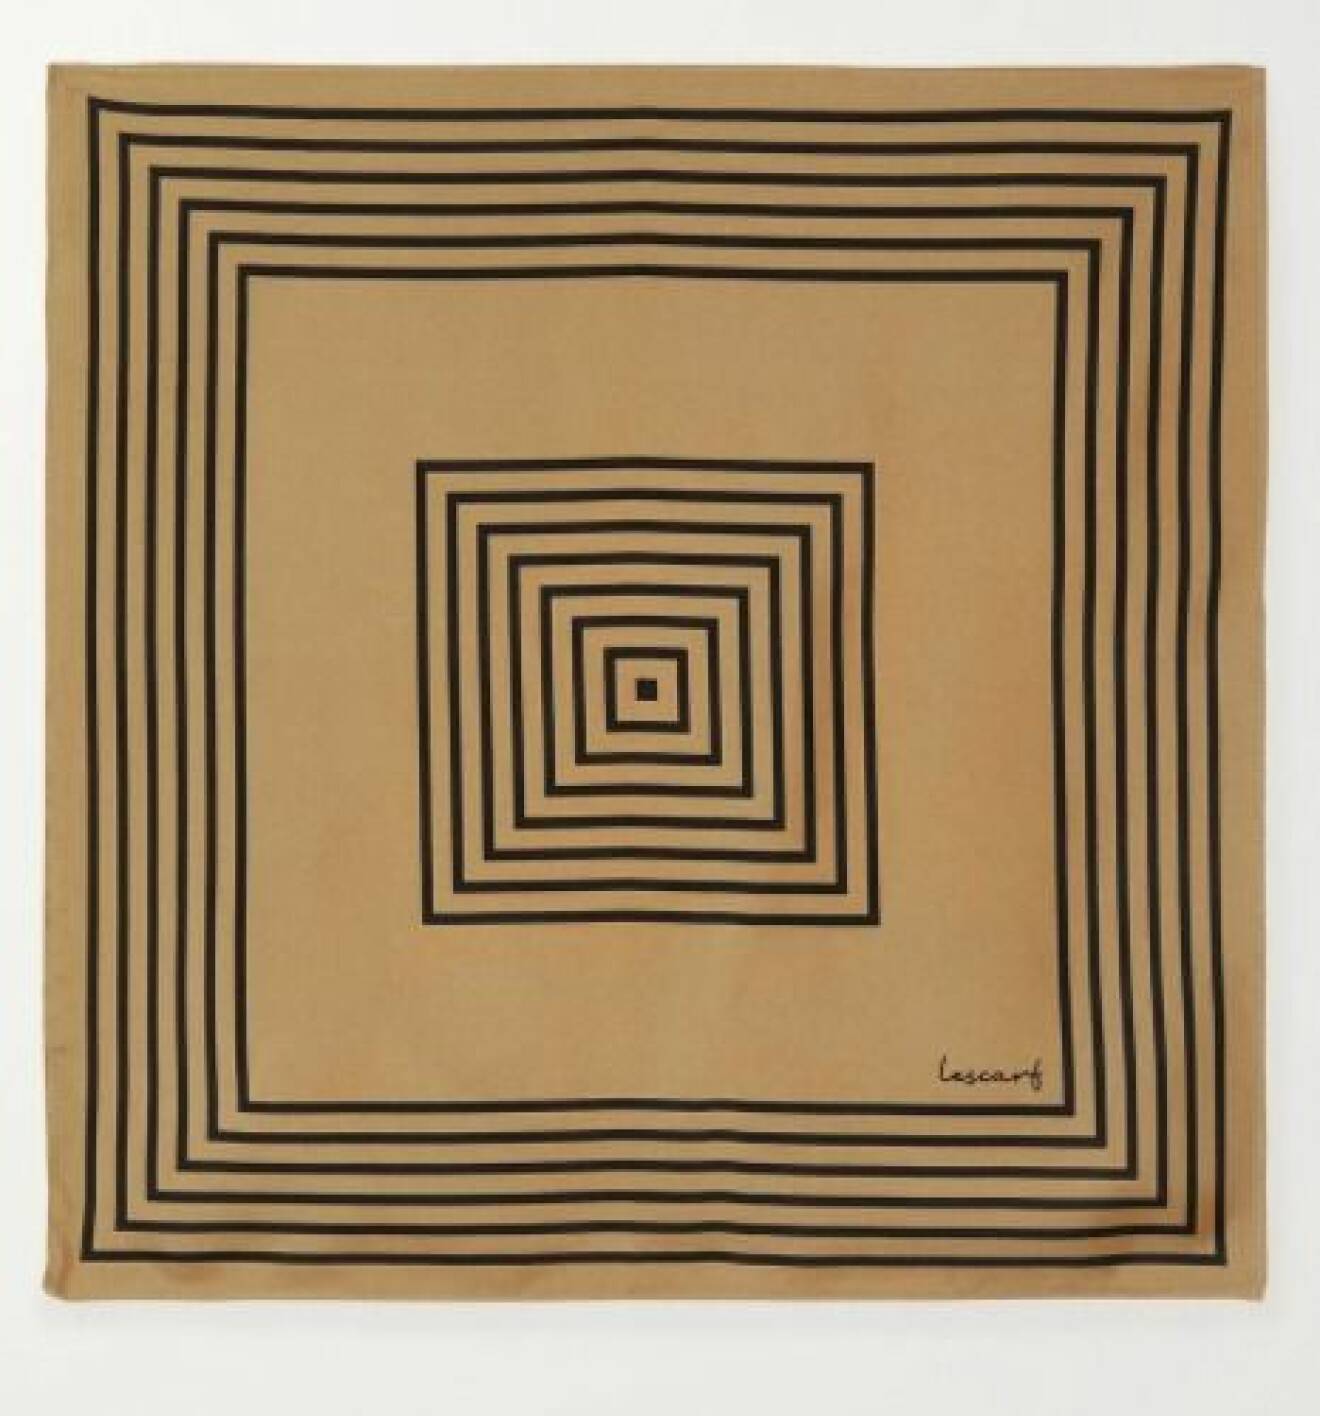 Scarf i brunt med svarta fyrkanter som bildar ett symmetriskt mönster. Scarf från Le scarf.